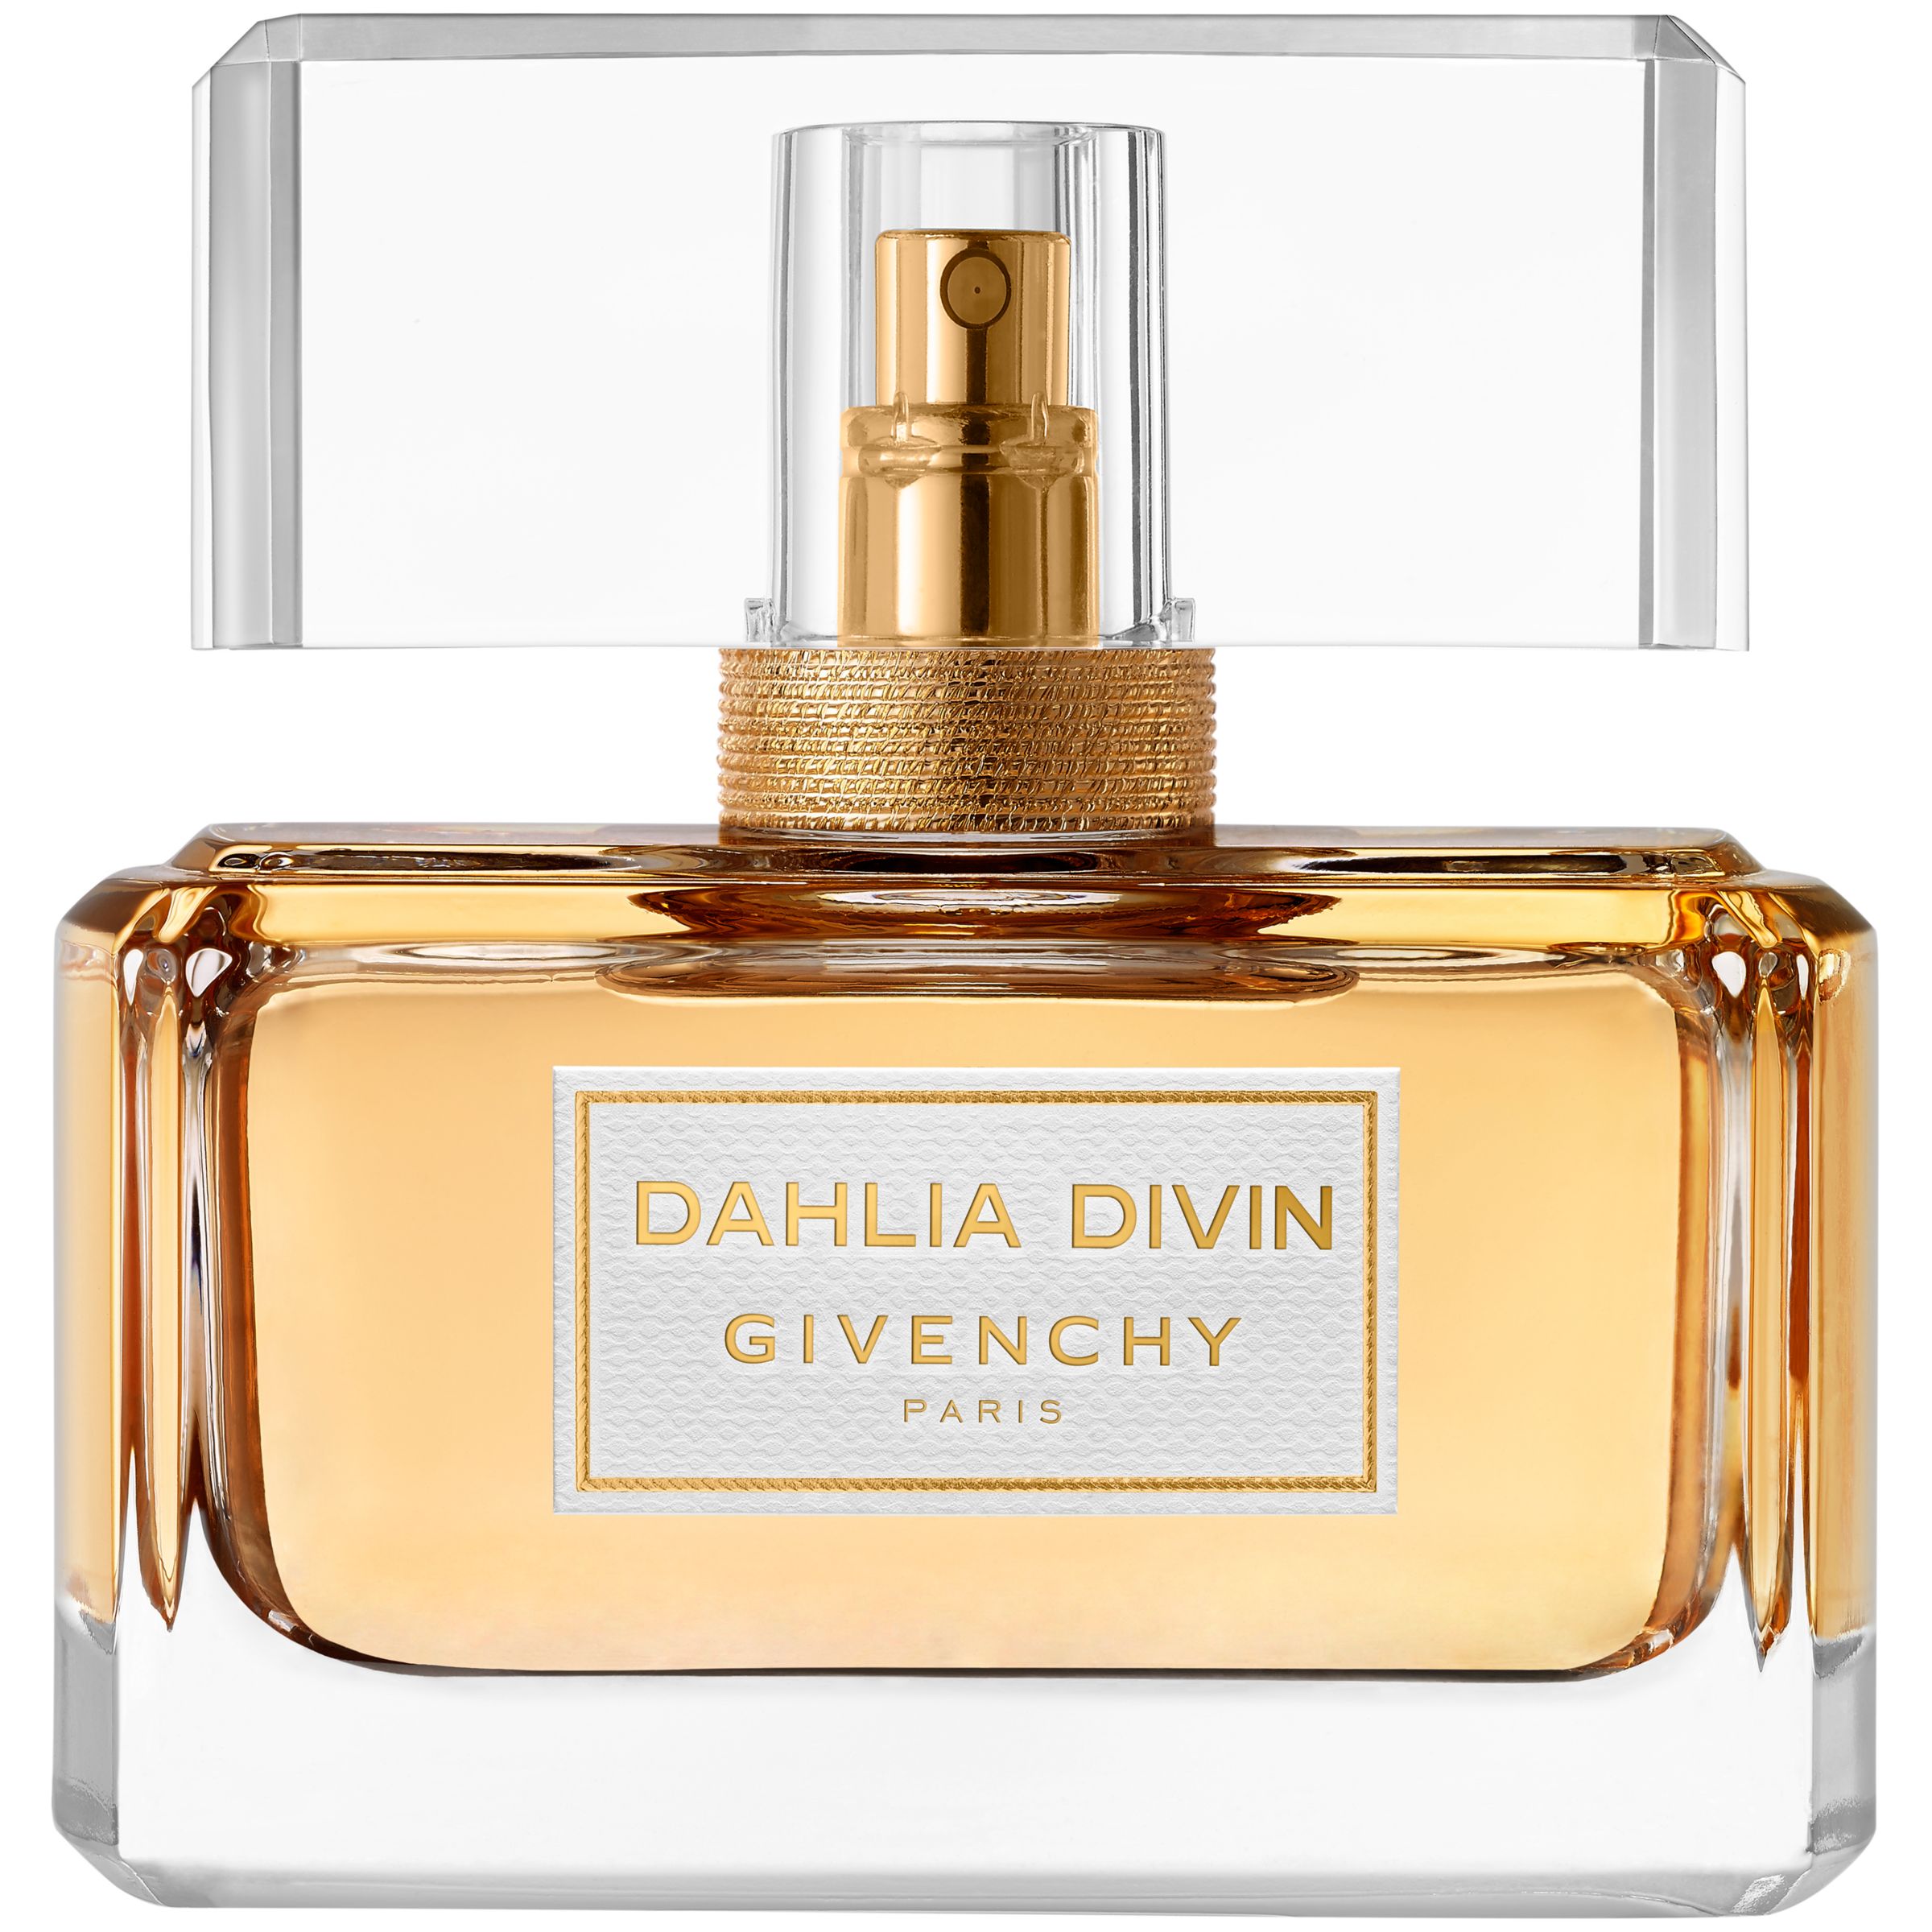 Givenchy Dahlia Divin Eau de Parfum at John Lewis